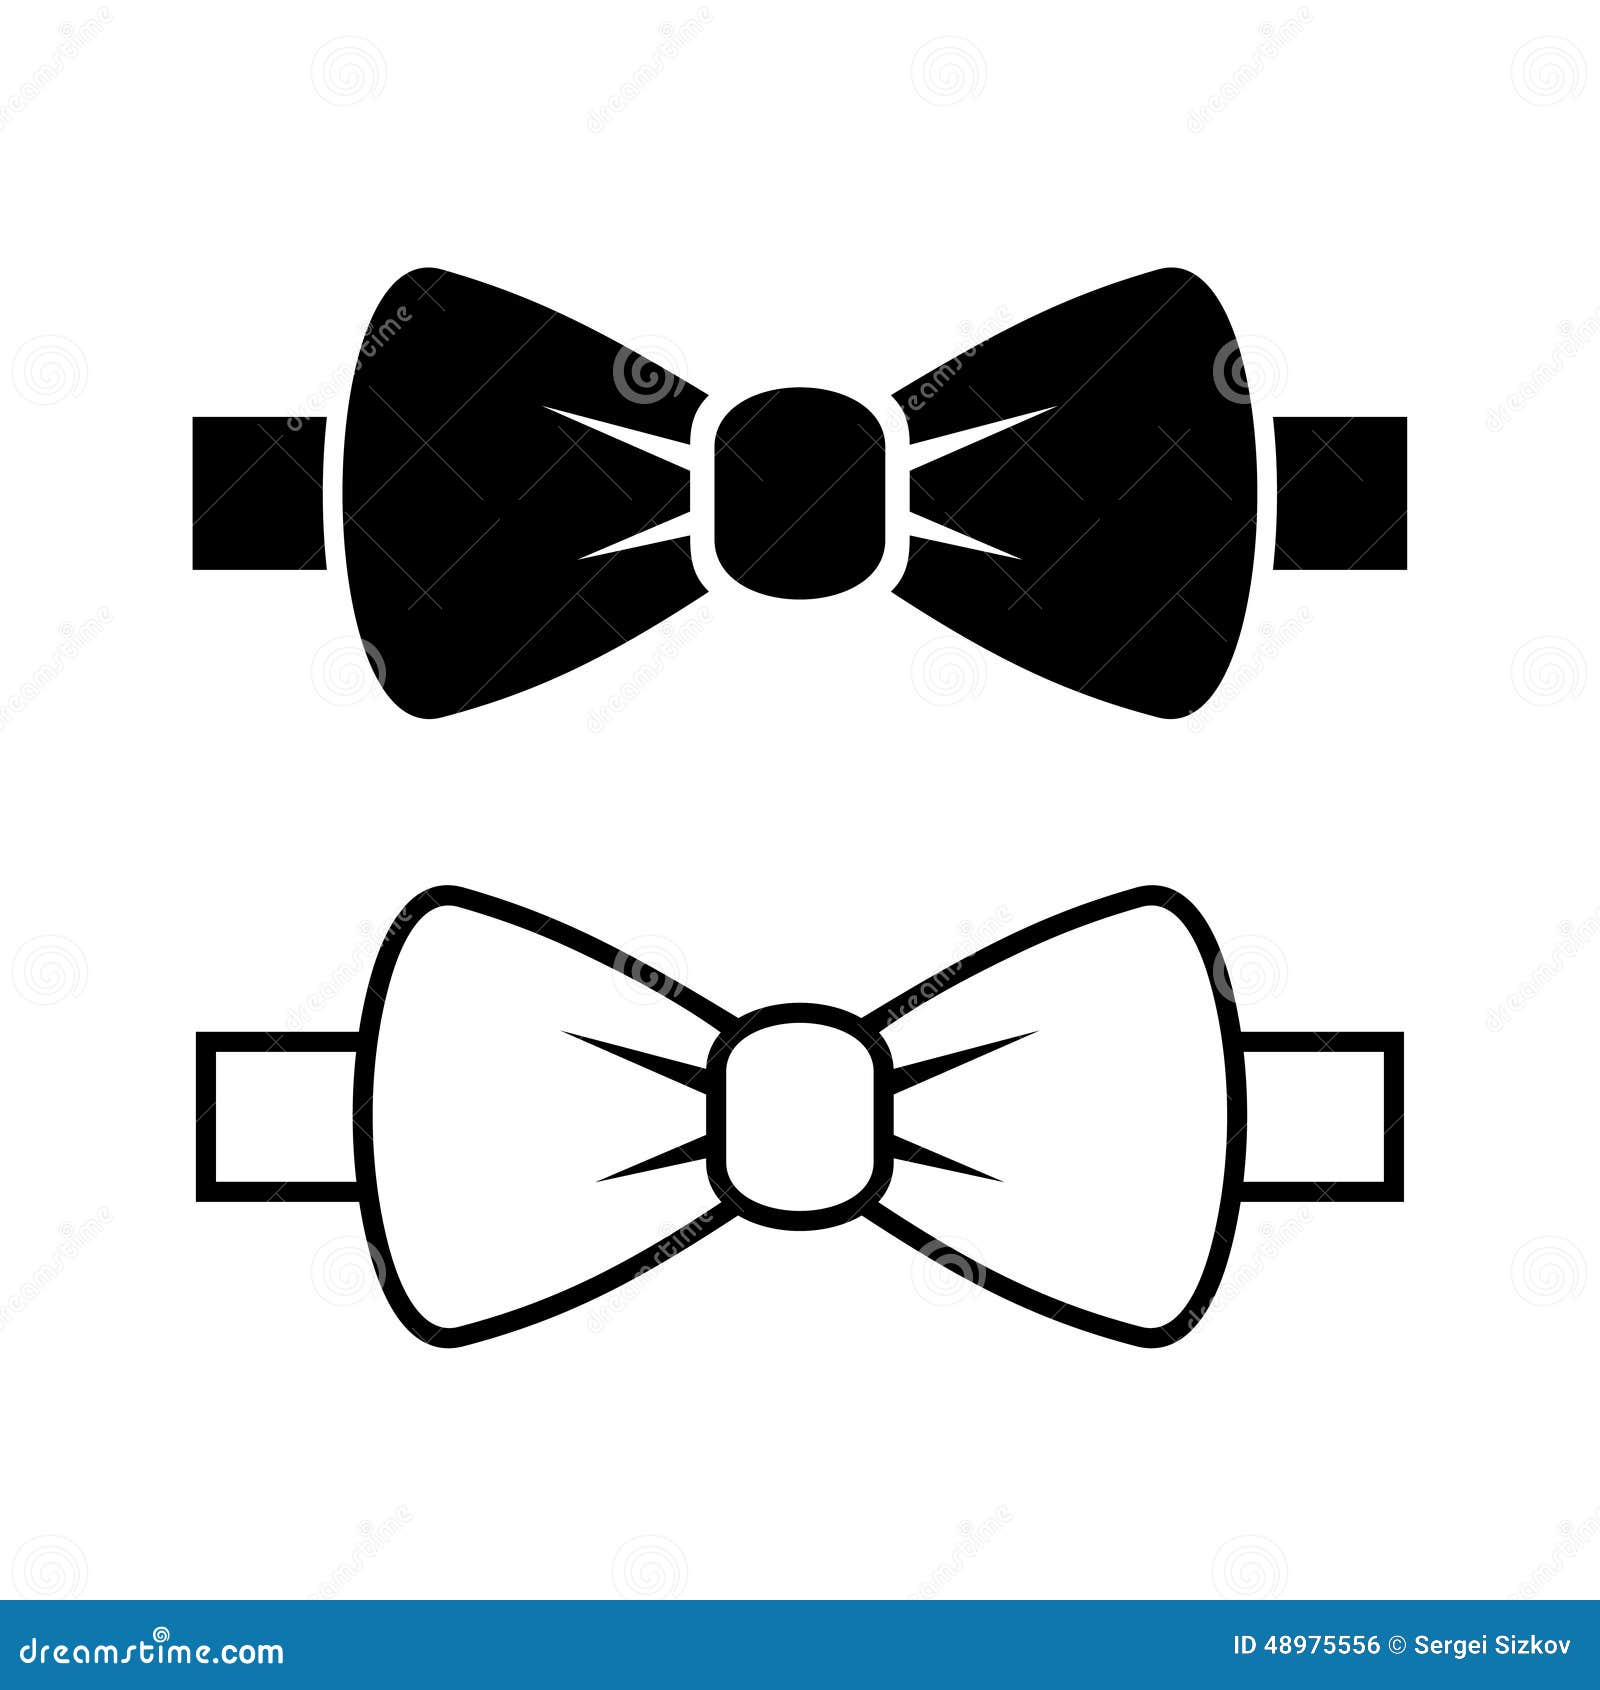 bow tie icons set